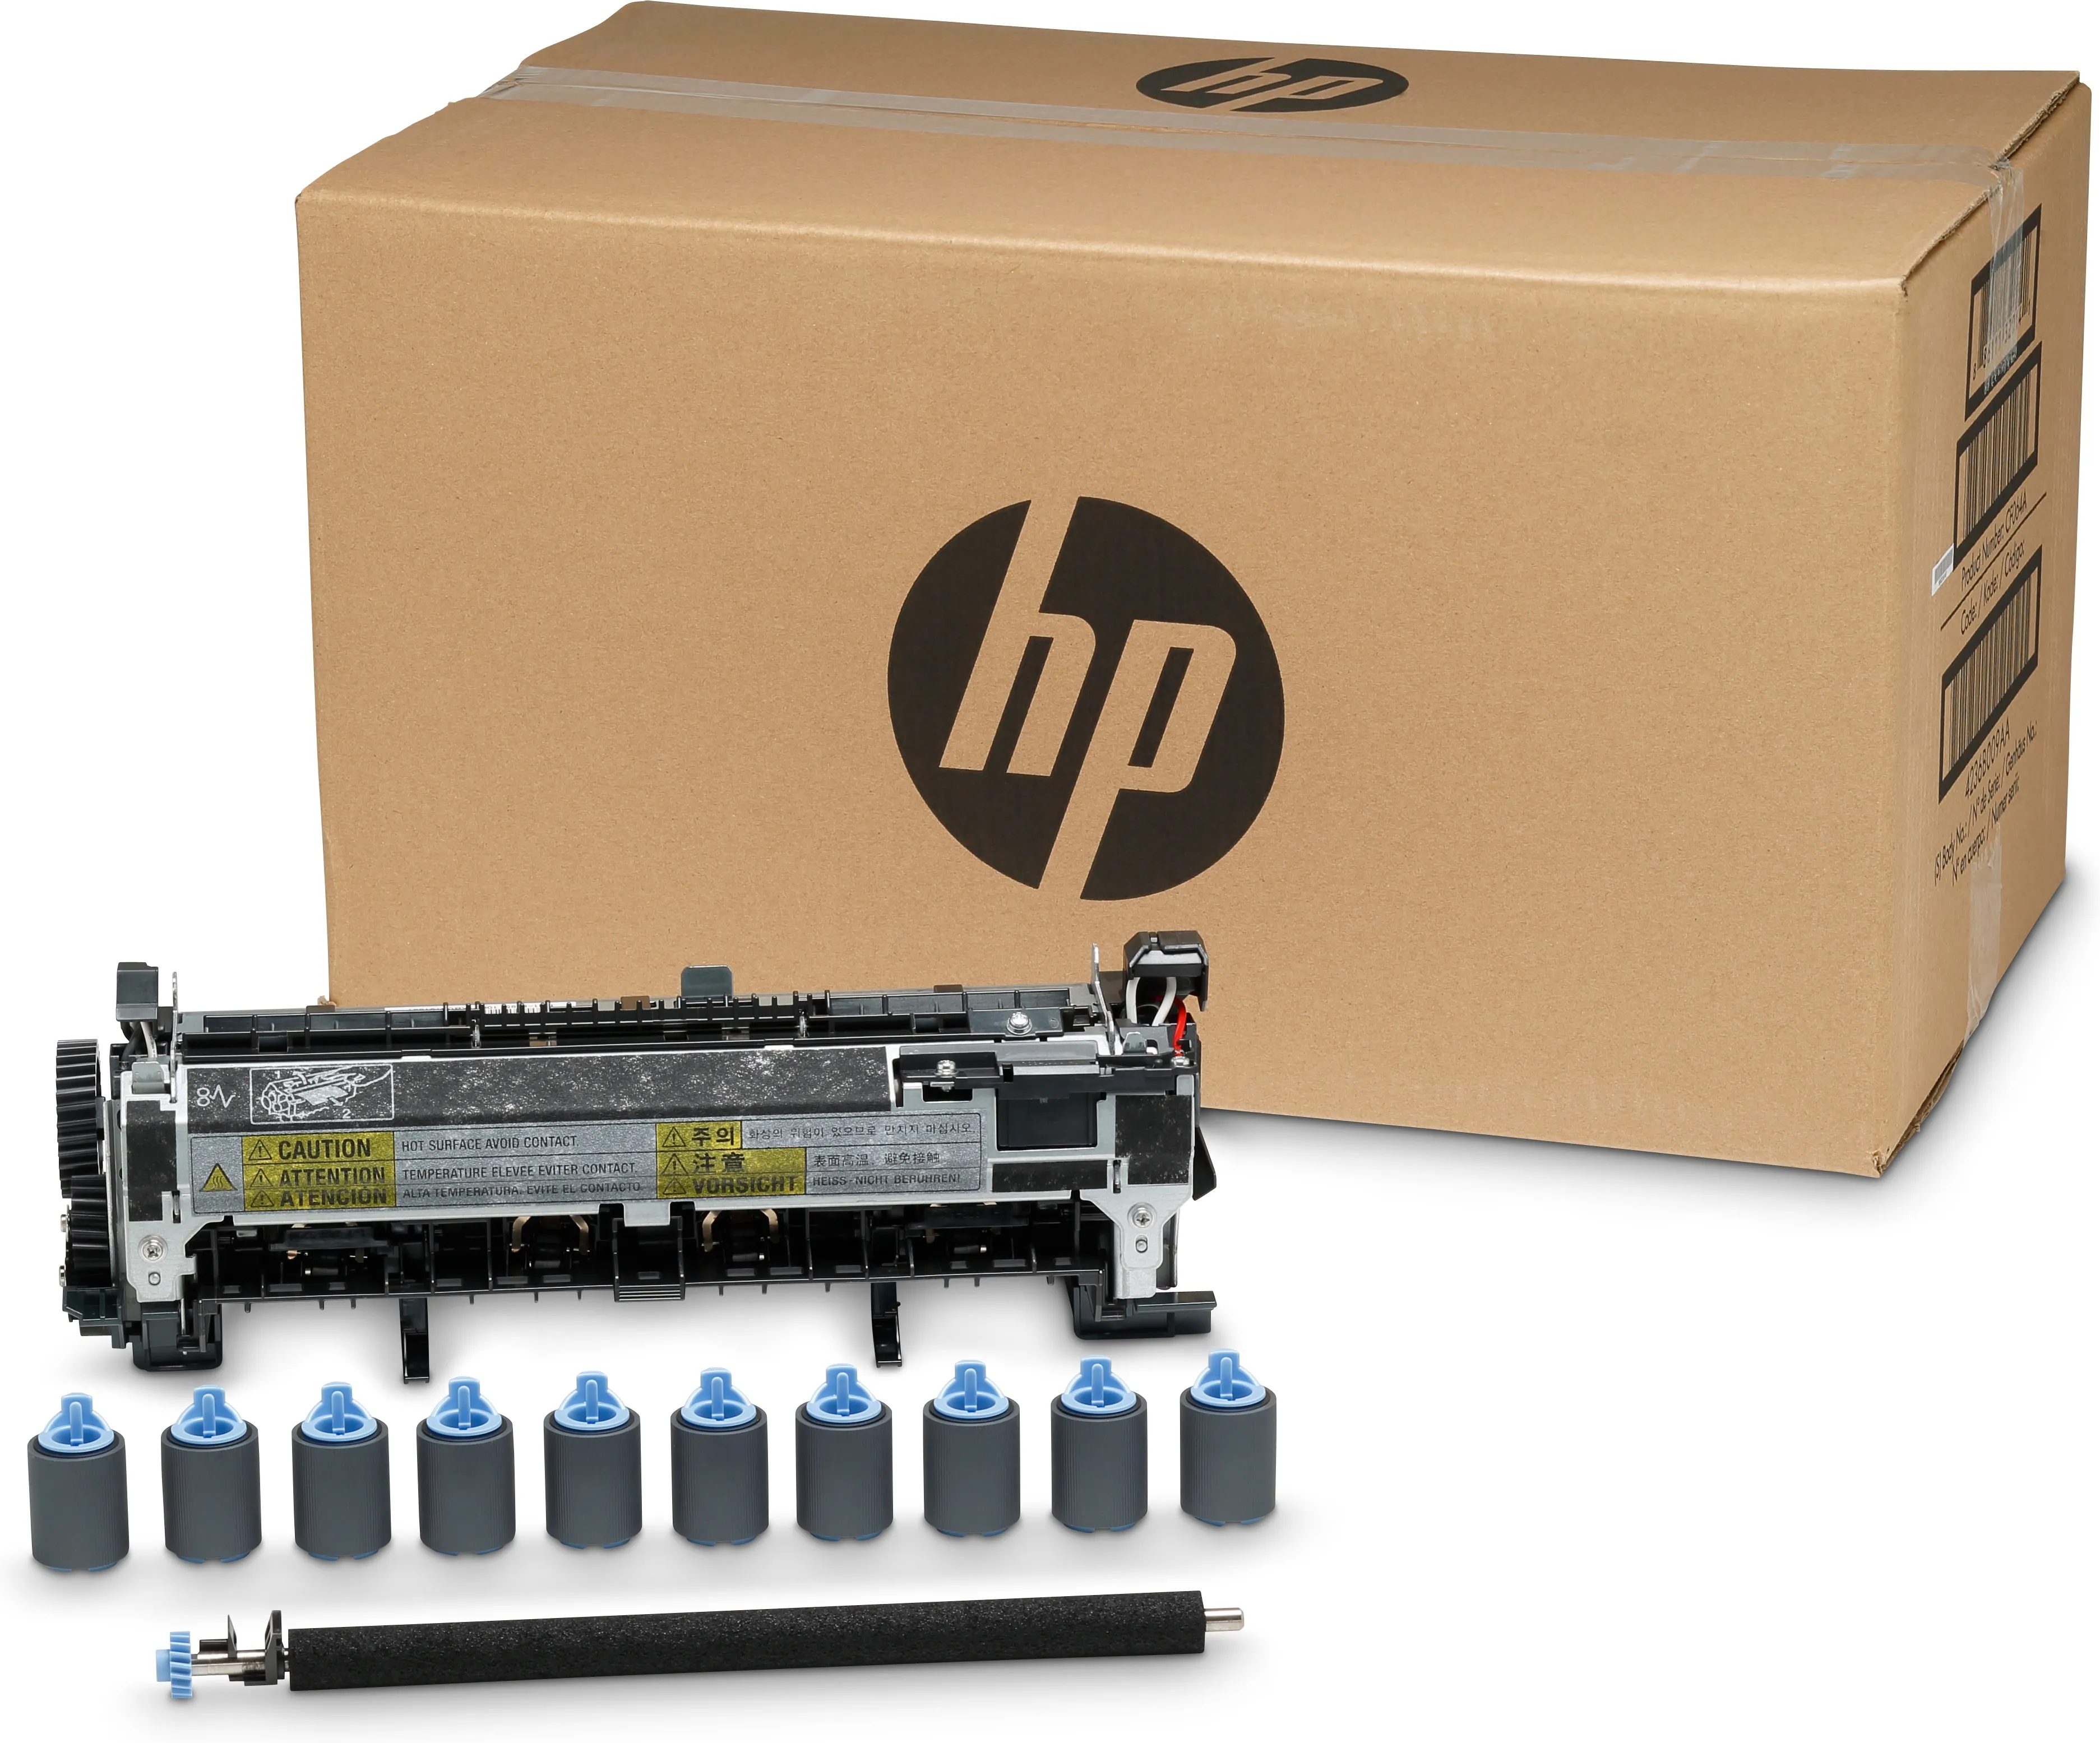 Vente HP original LaserJet Enterprise M601 Enterprise M602 HP au meilleur prix - visuel 6